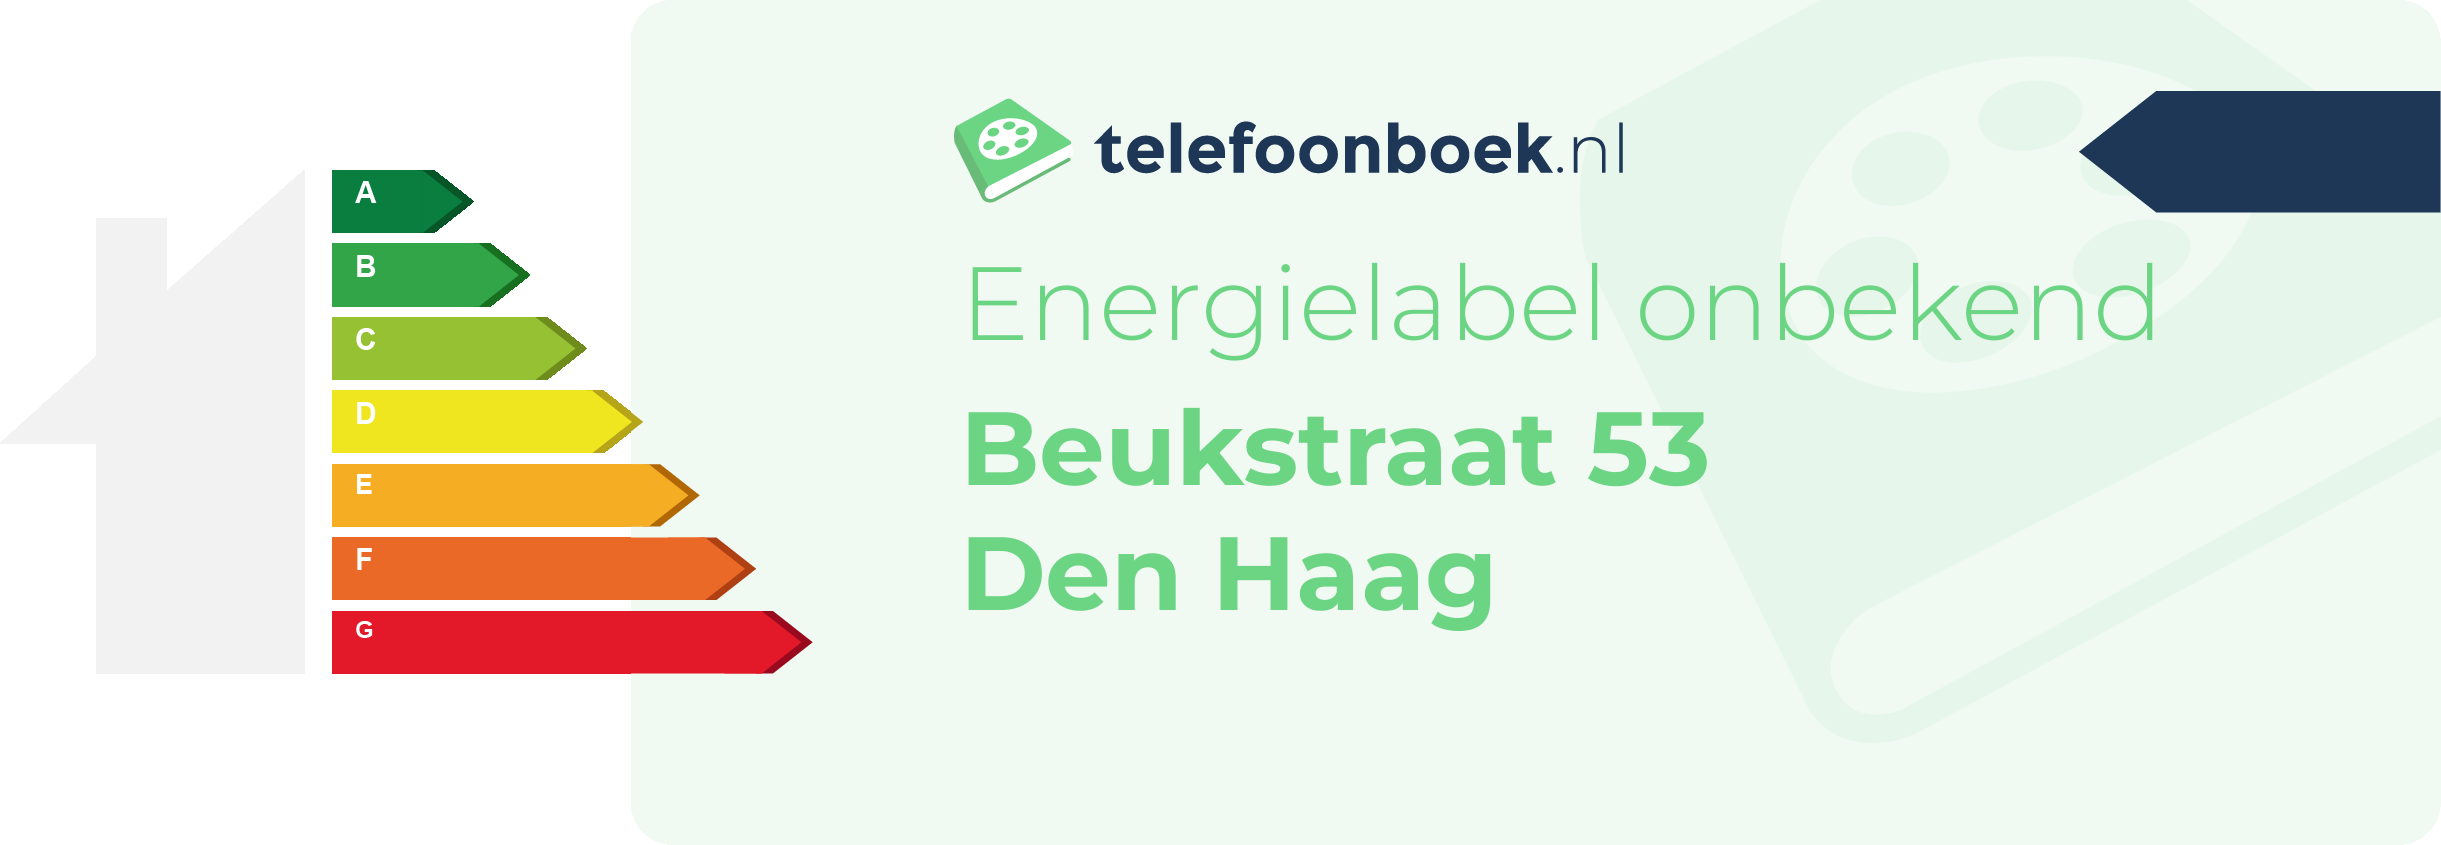 Energielabel Beukstraat 53 Den Haag